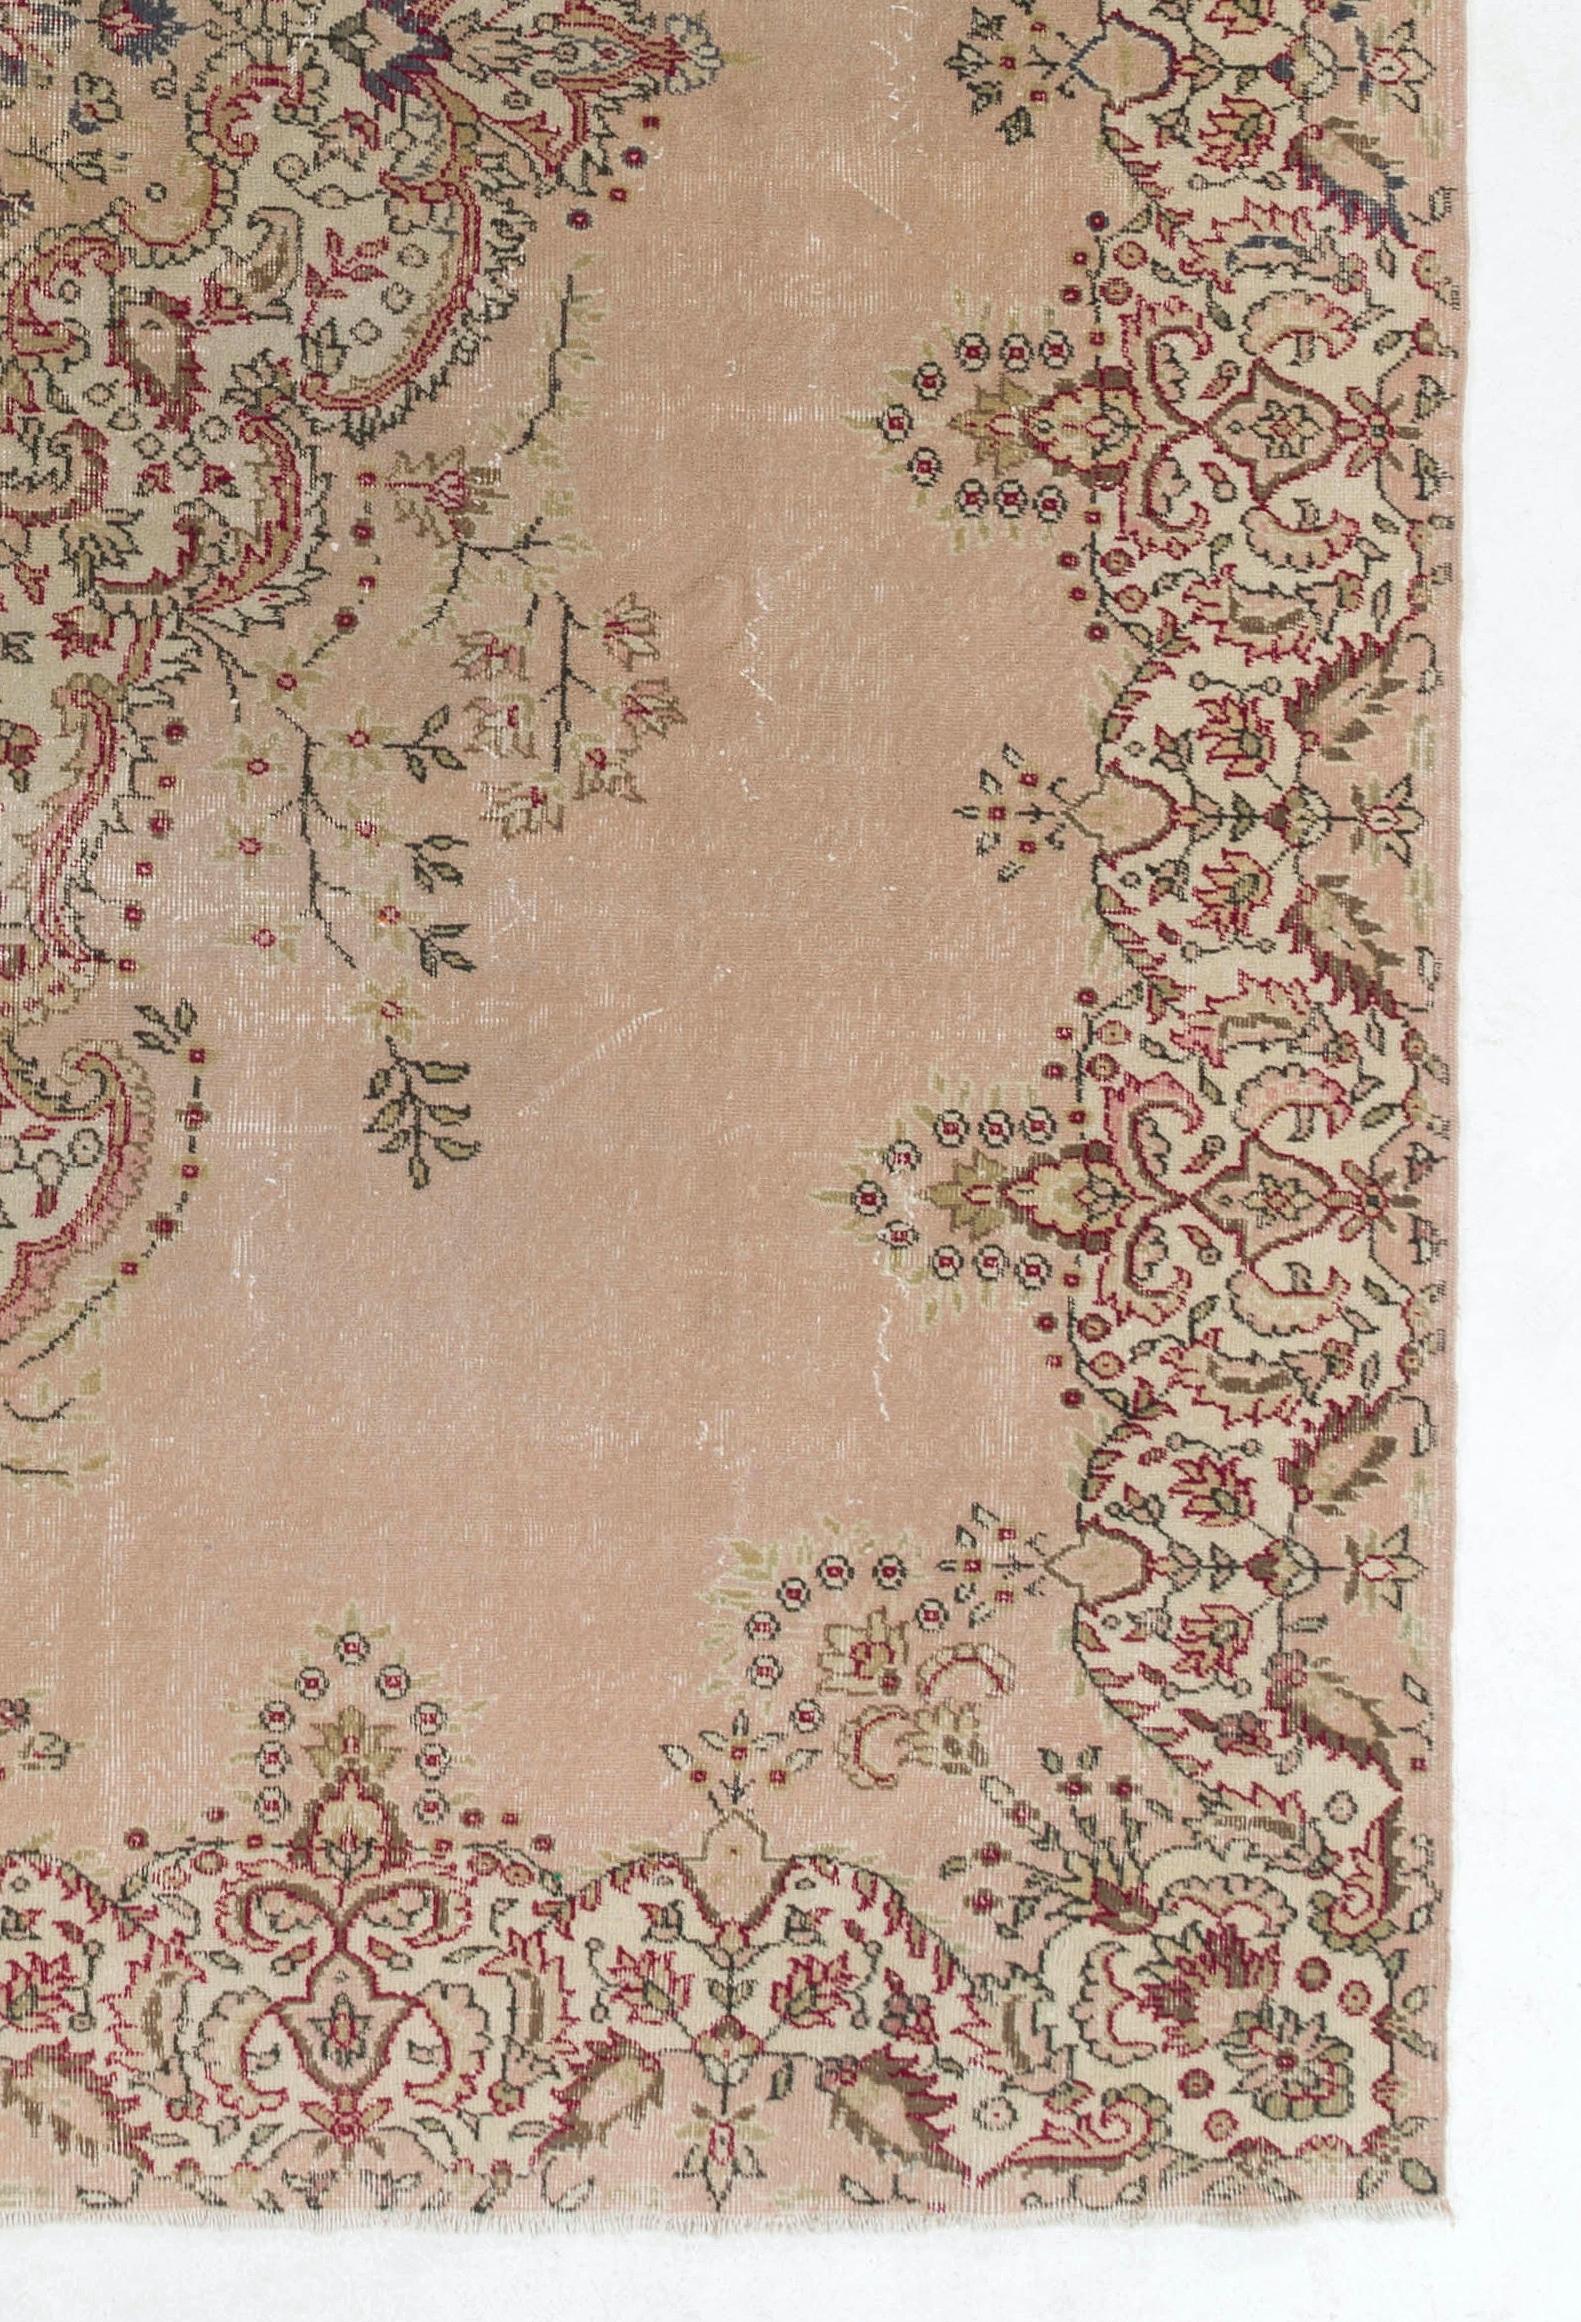 8.2x12.6 ft Fine Vintage Floral Turkish Wool Rug in Pastel Pale Pink Color 1